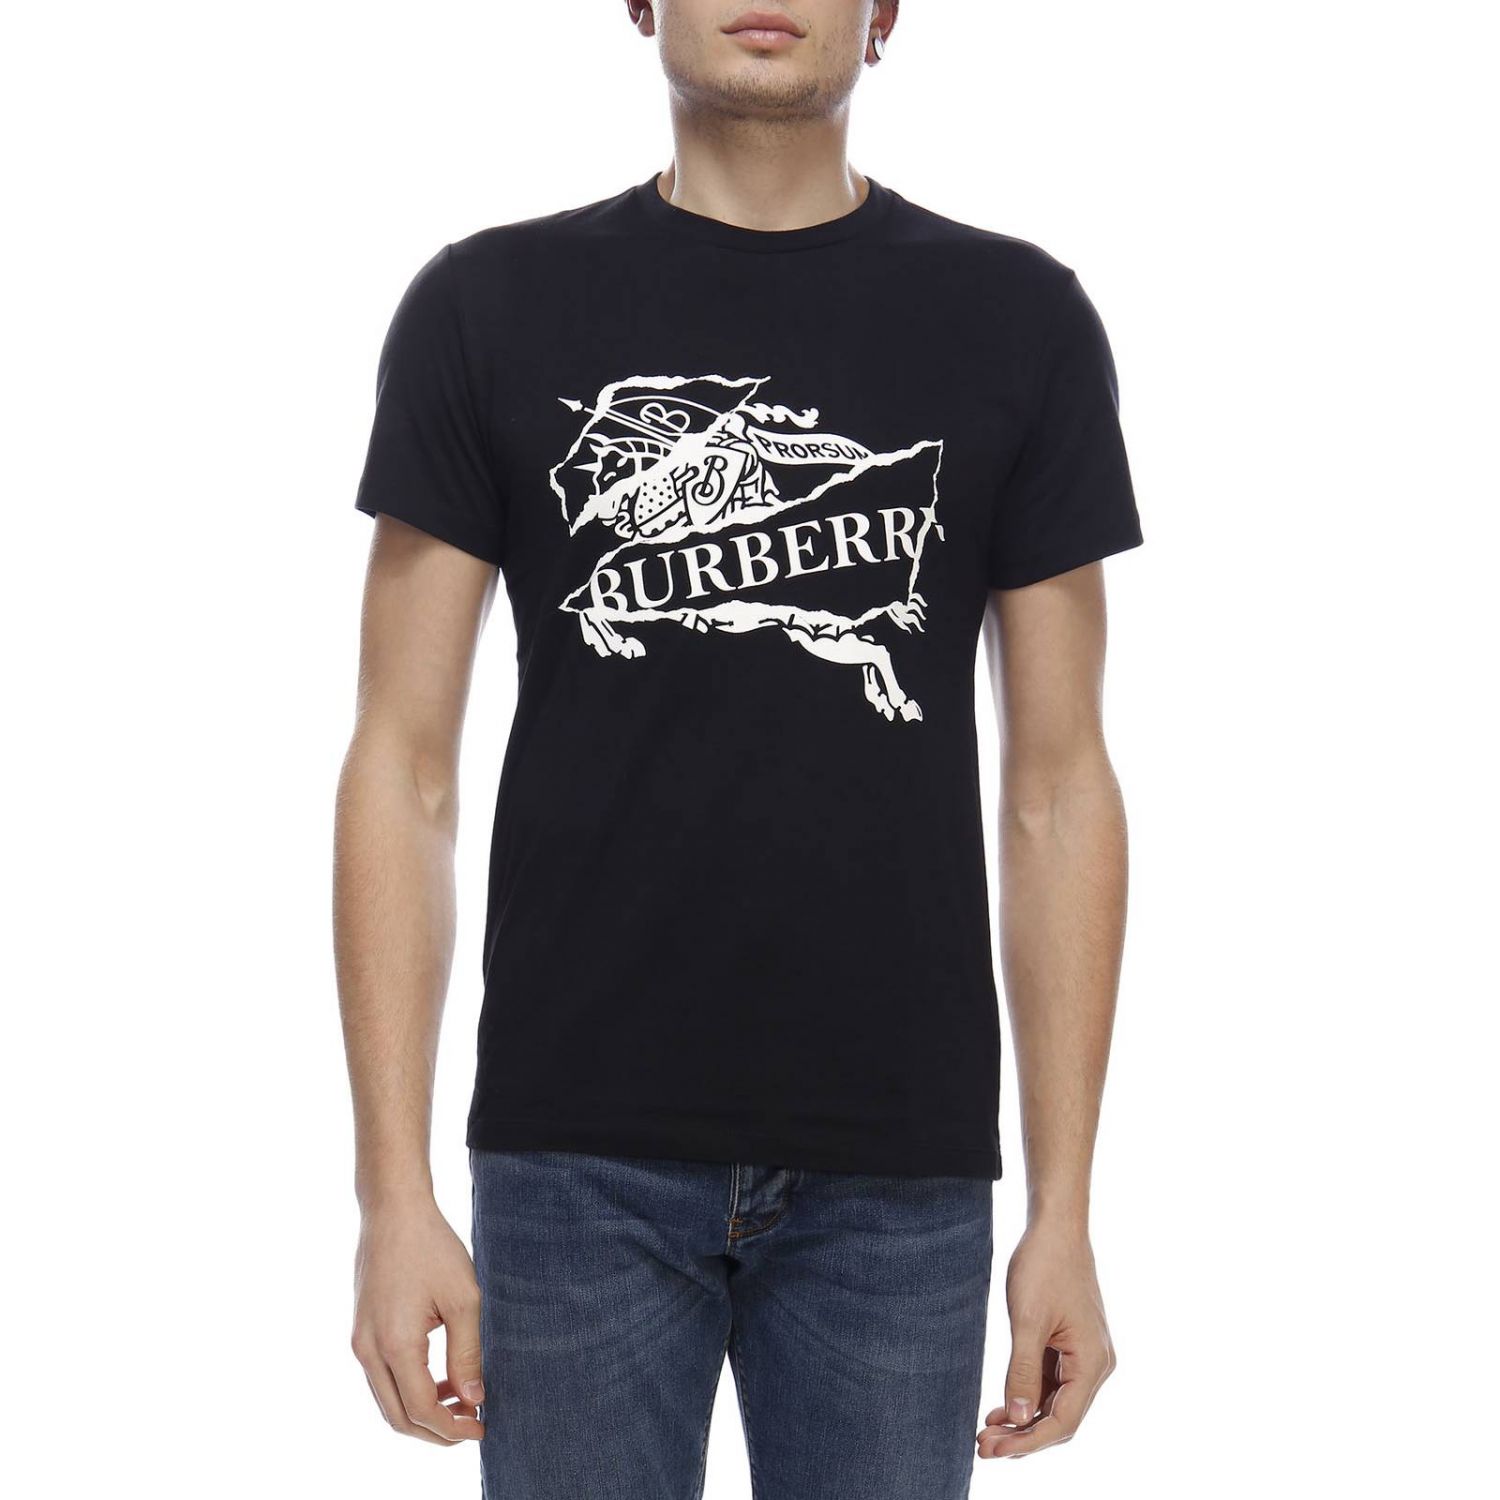 Burberry Outlet: T-shirt men | T-Shirt Burberry Men Black | T-Shirt